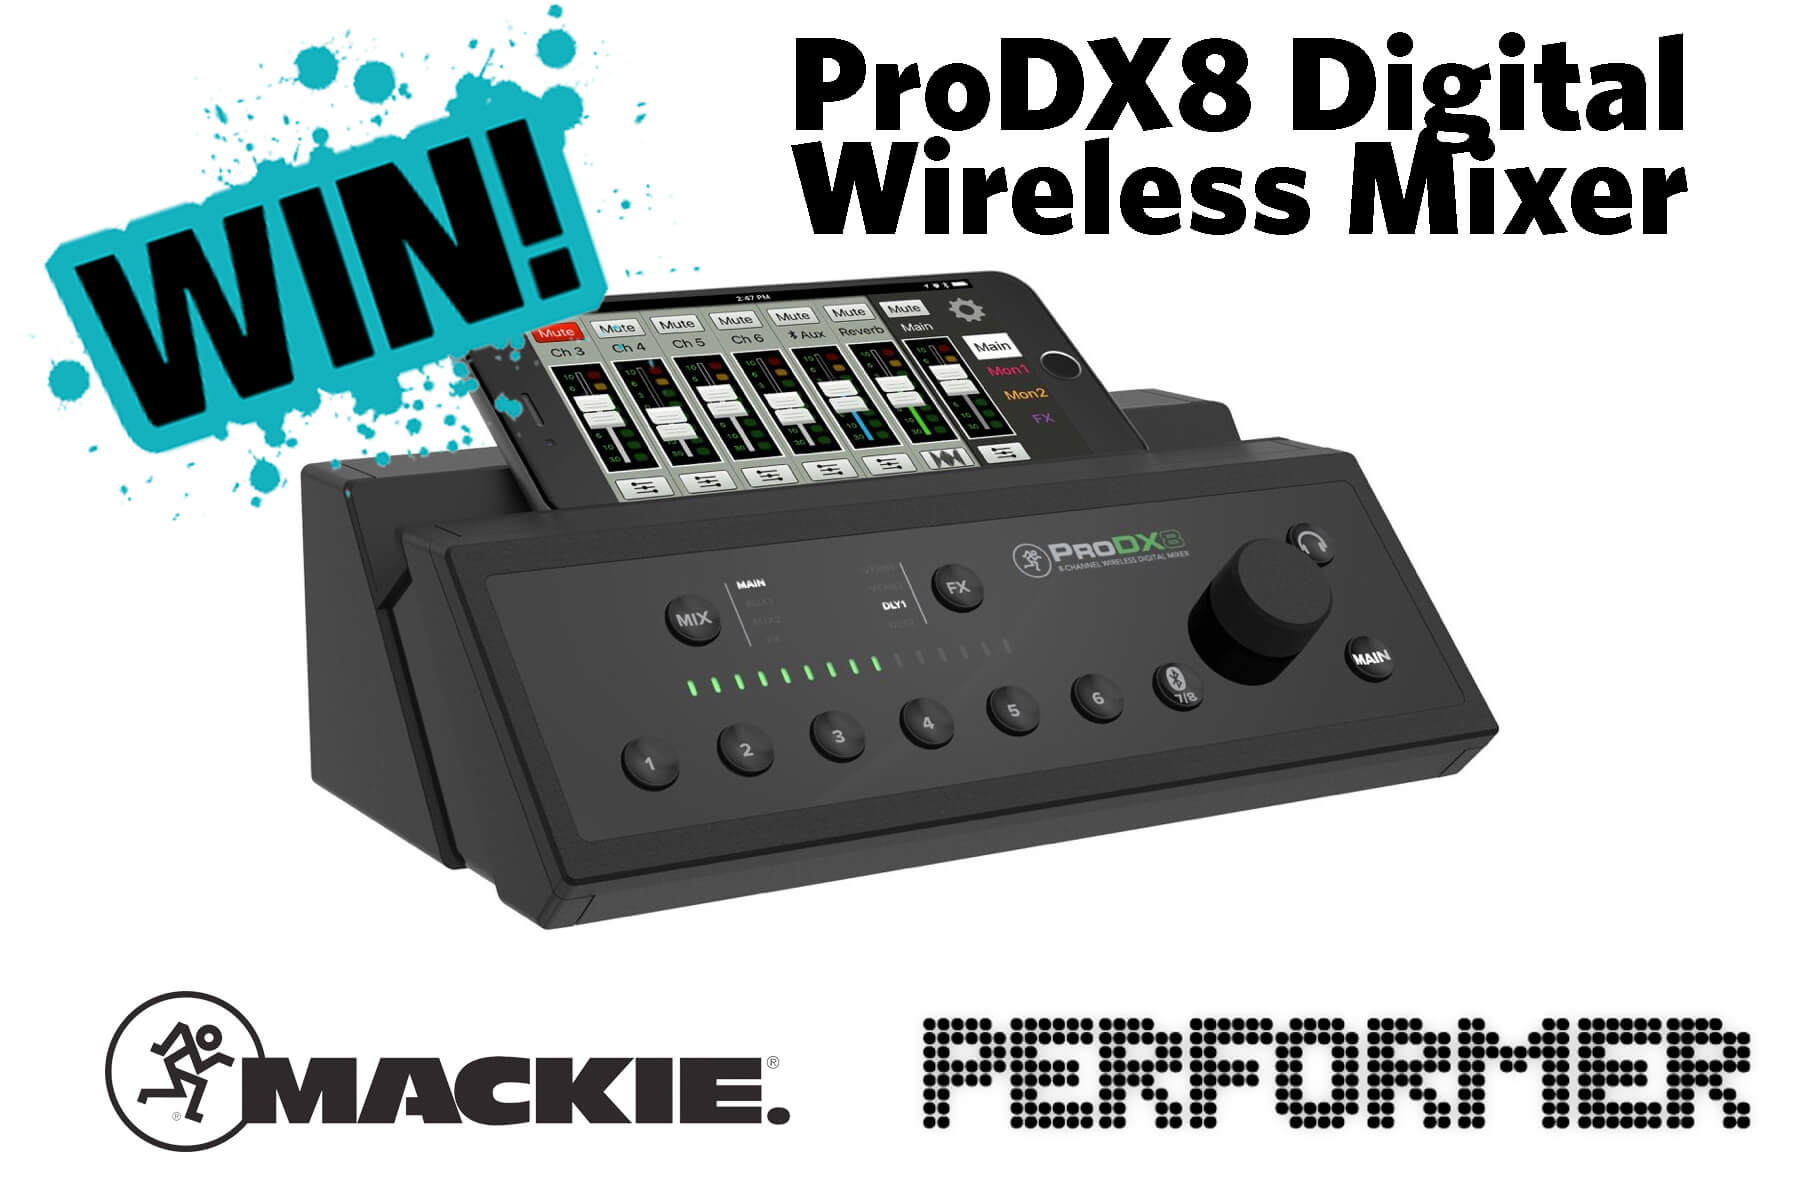 Enter to Win a Mackie ProDX8 Wireless Digital Mixer